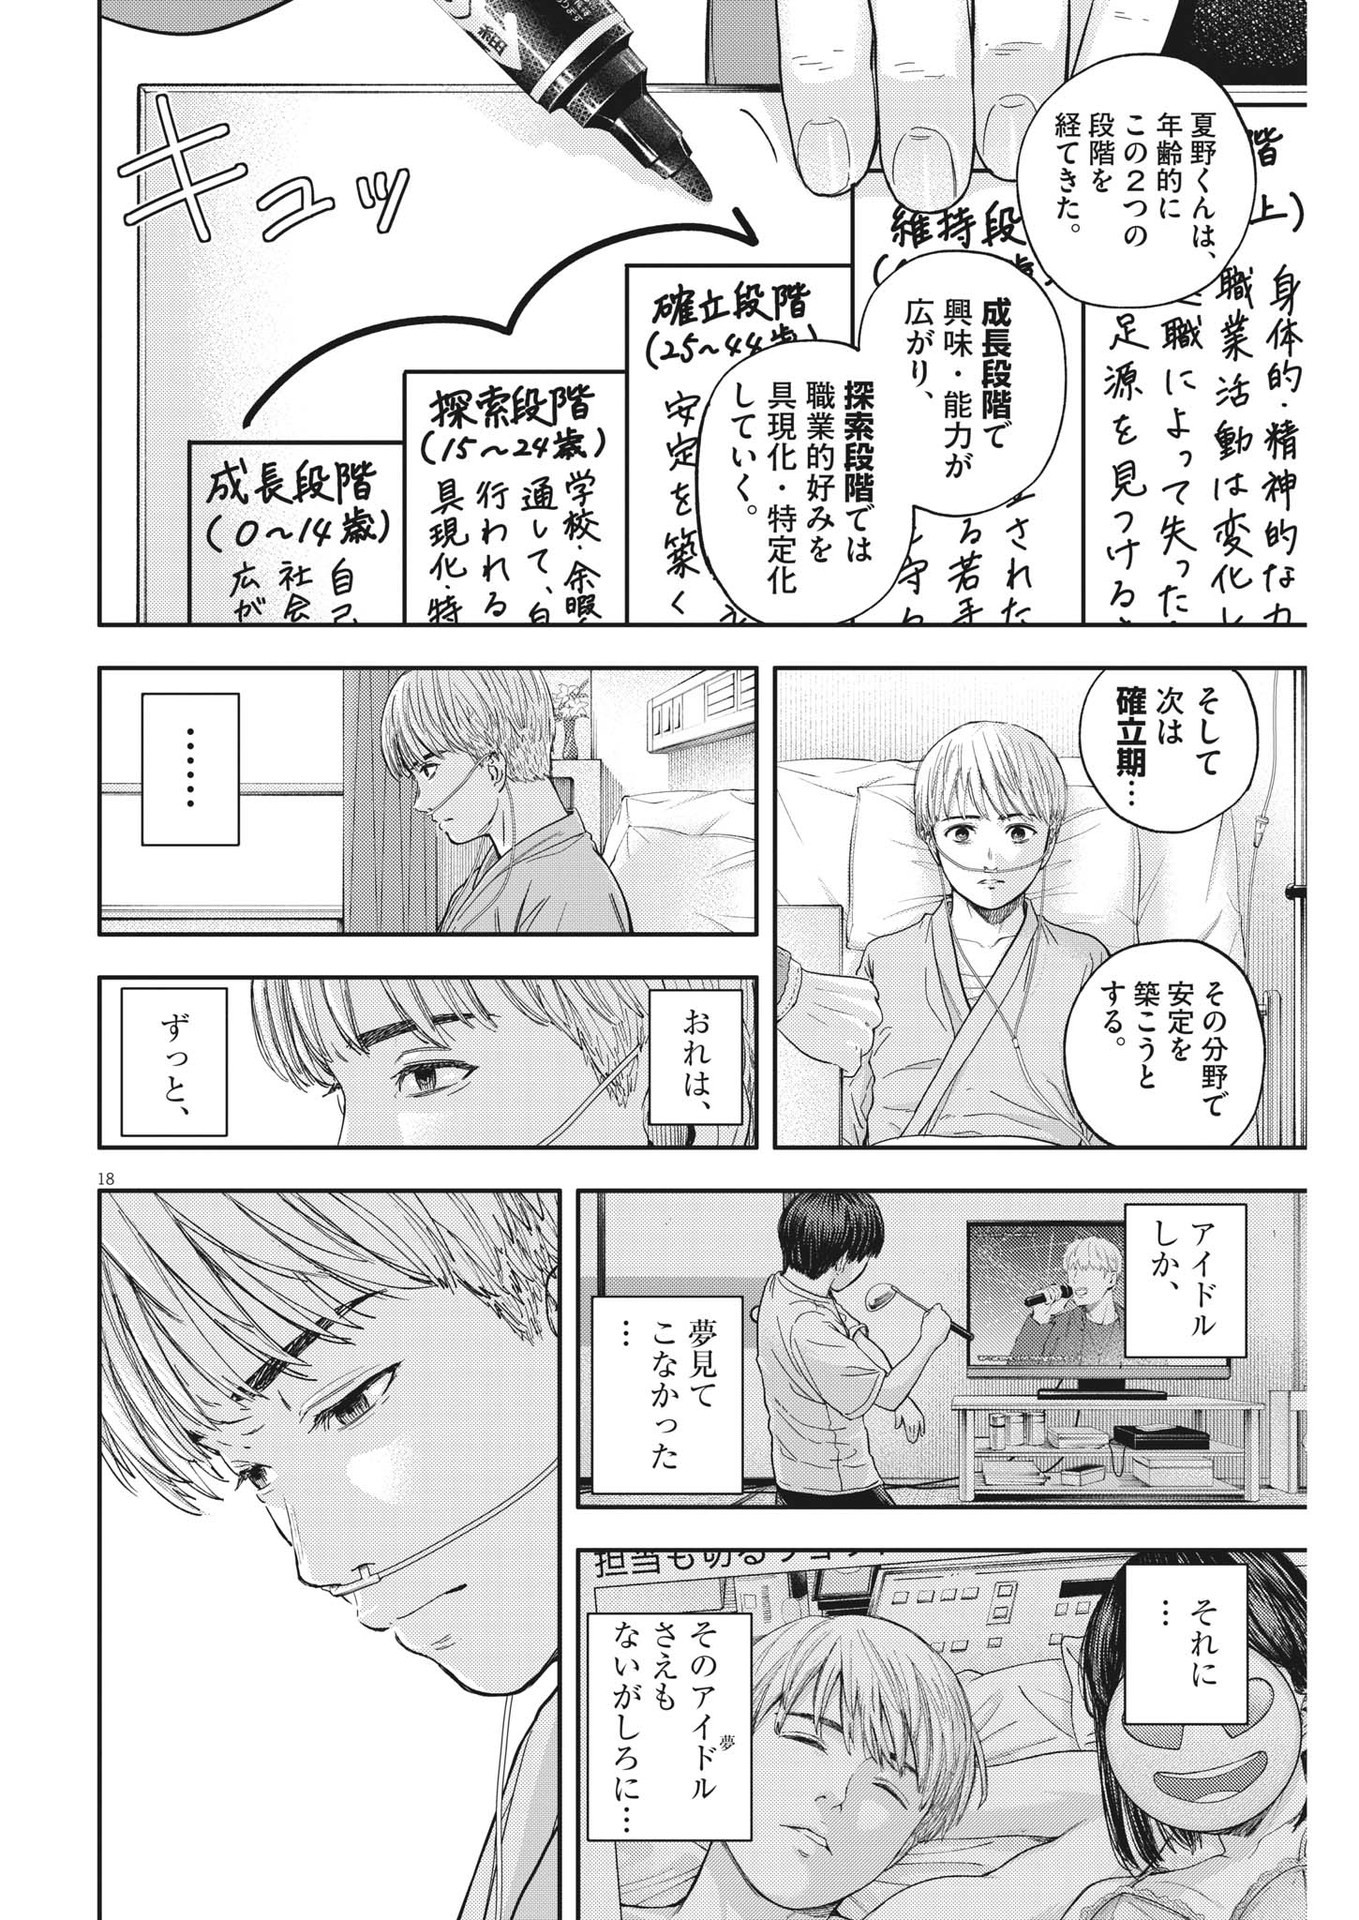 Yumenashi-sensei no Shinroshidou - Chapter 17 - Page 18